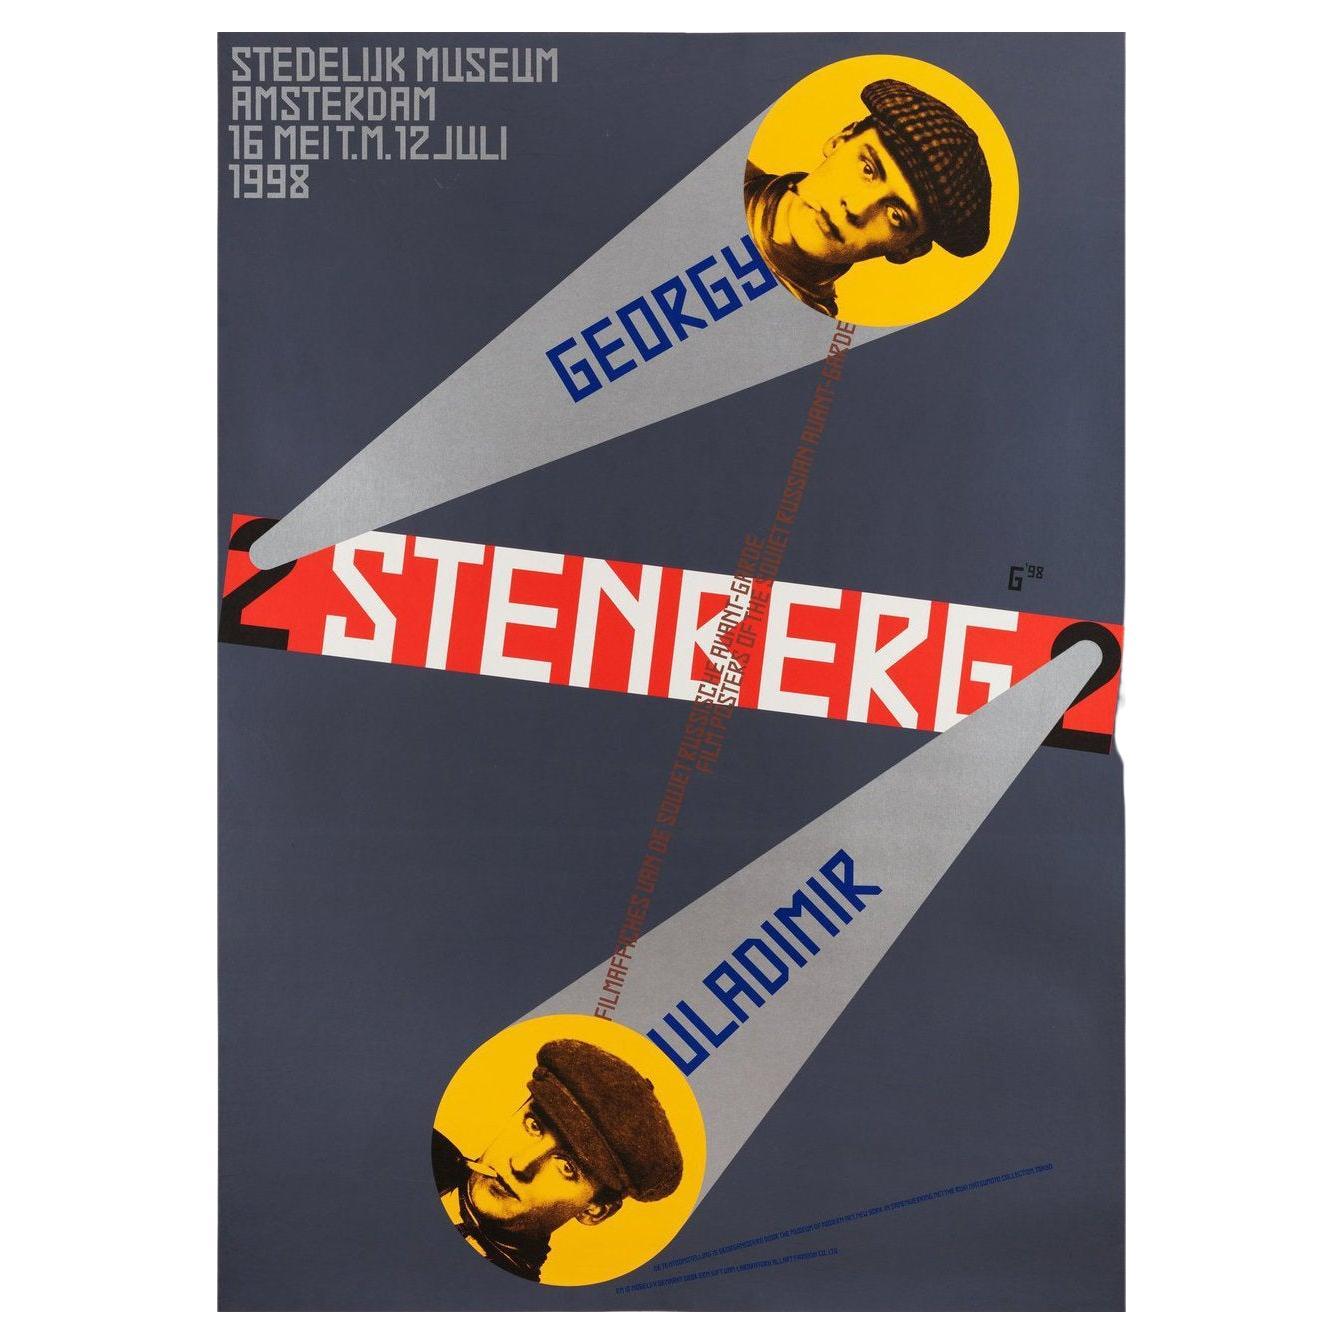 Filmaffiches Van Gregory En Vladamir Stenberg 1998 Swiss A0 Film Poster